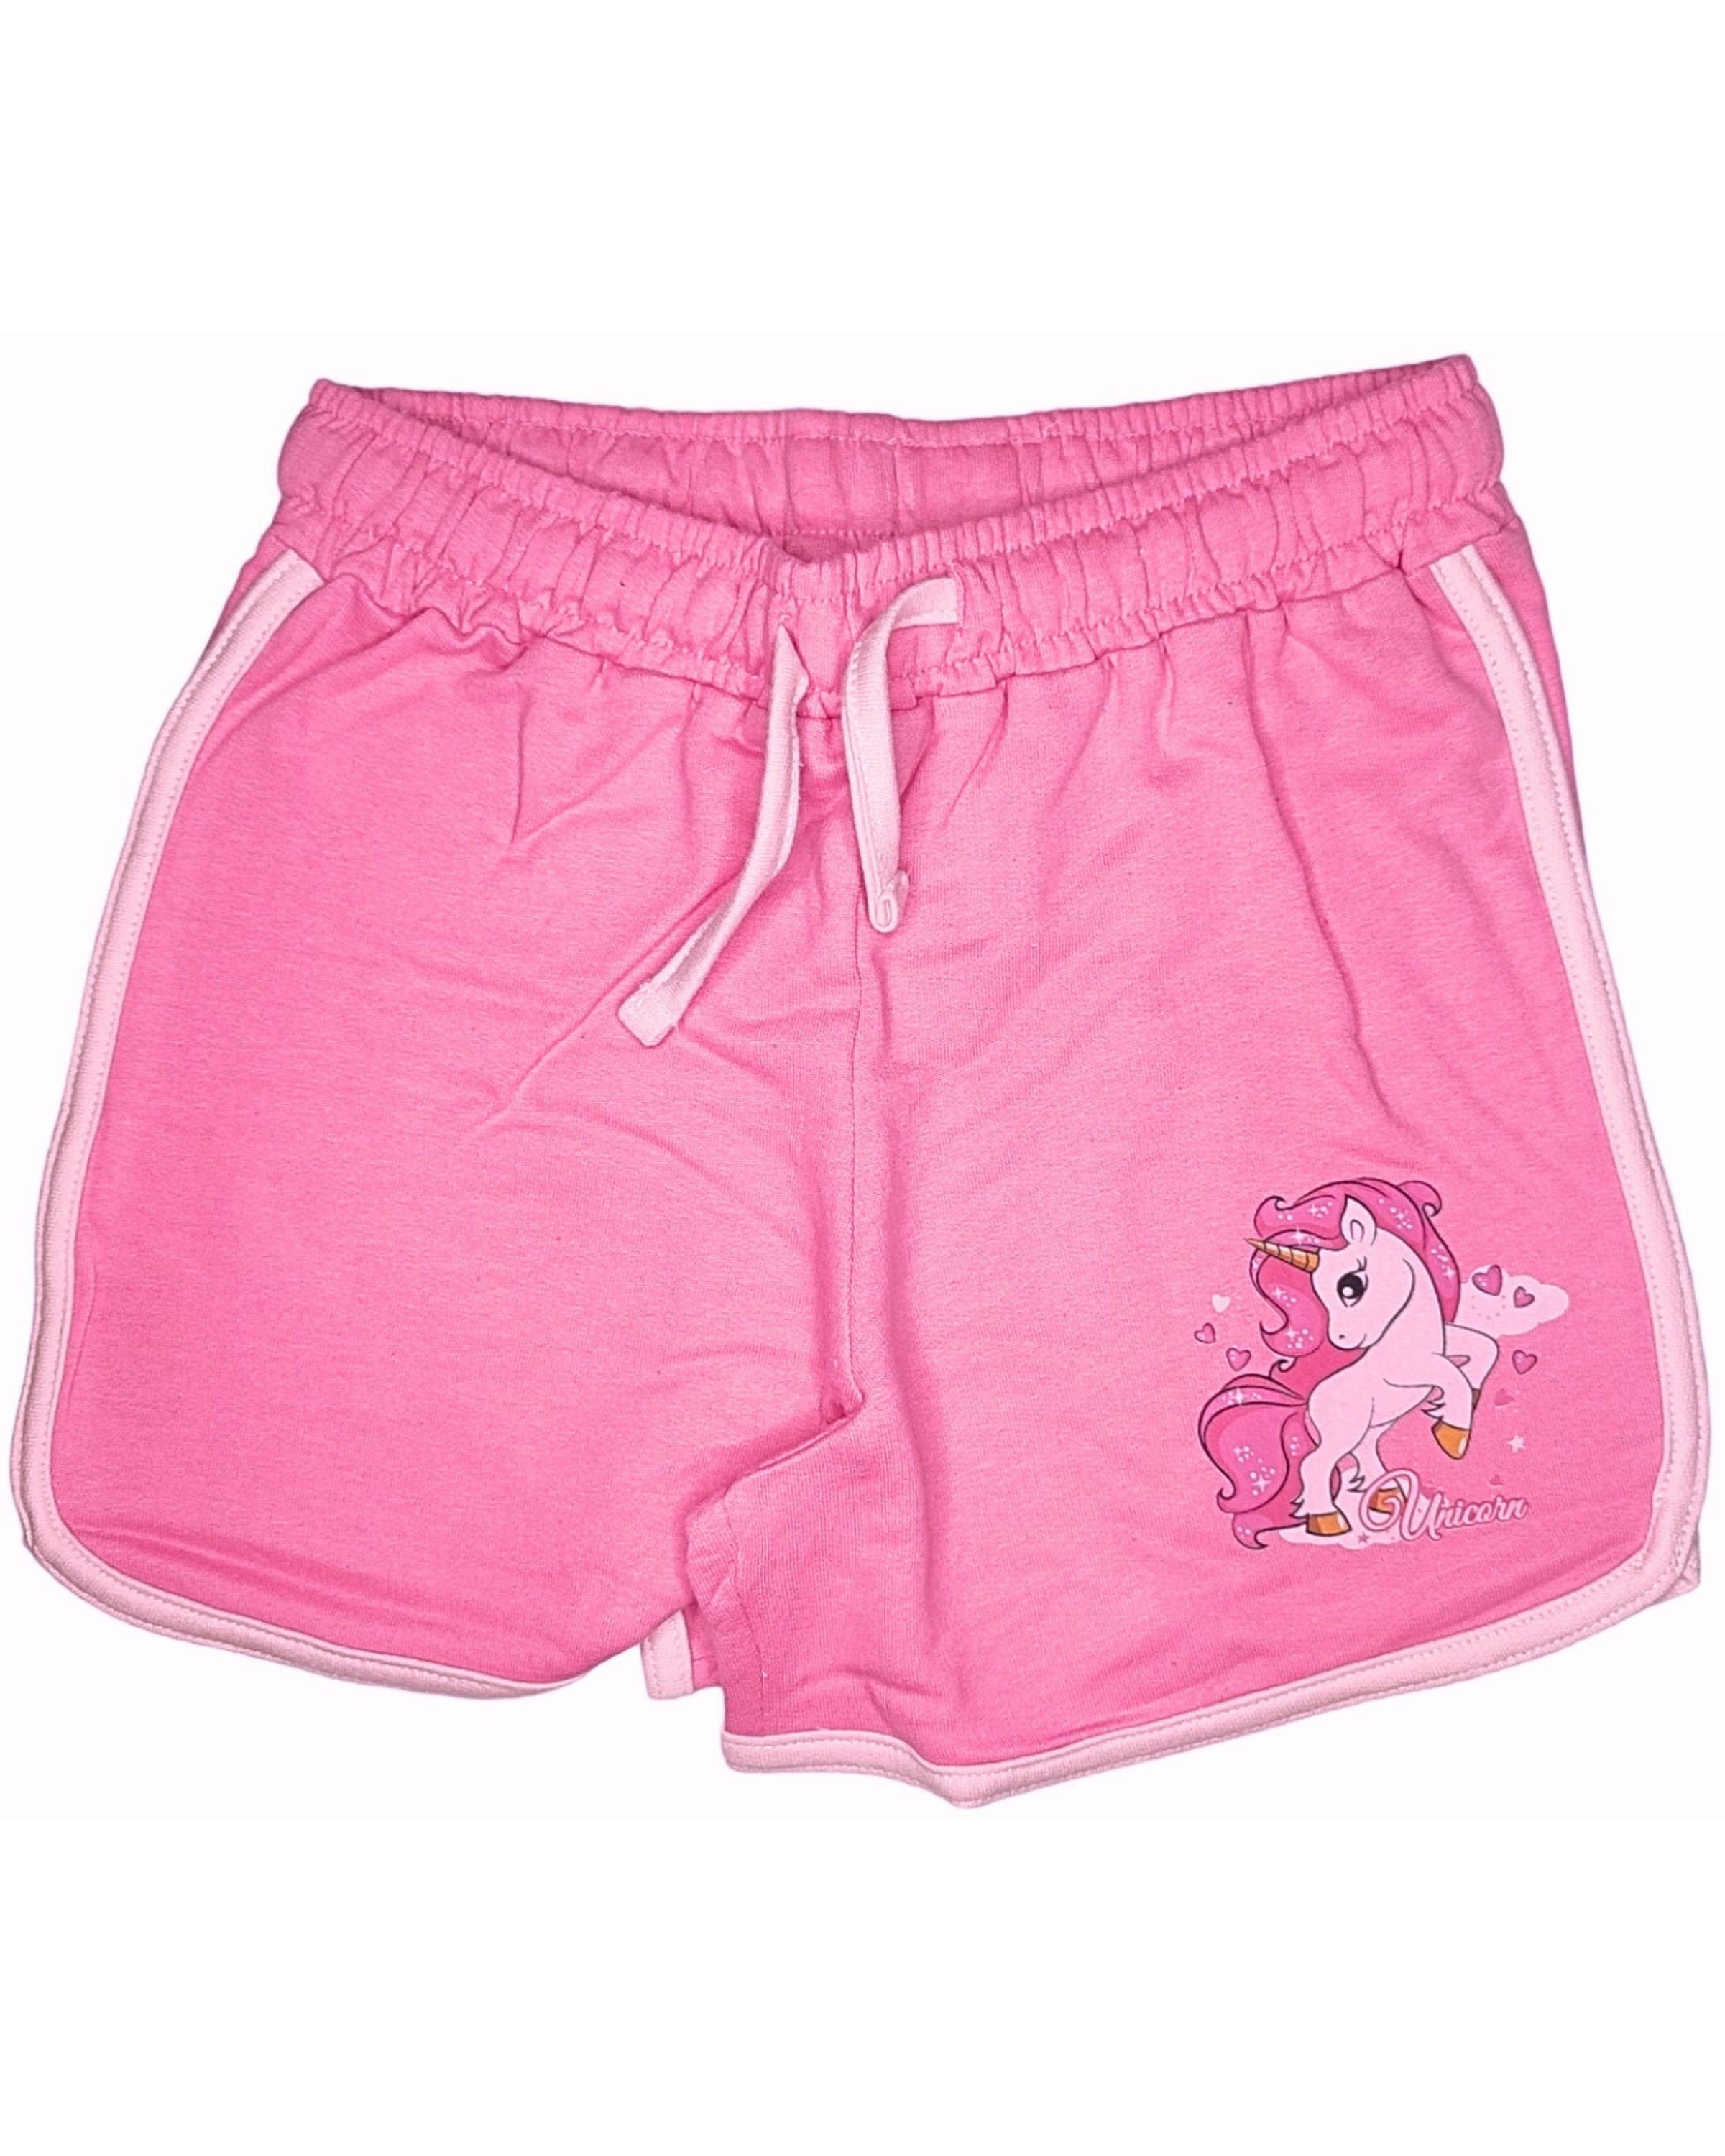 United Essentials Shorts Einhorn Mädchen kurze Hose aus Baumwolle Gr. 98 - 128 cm Pink